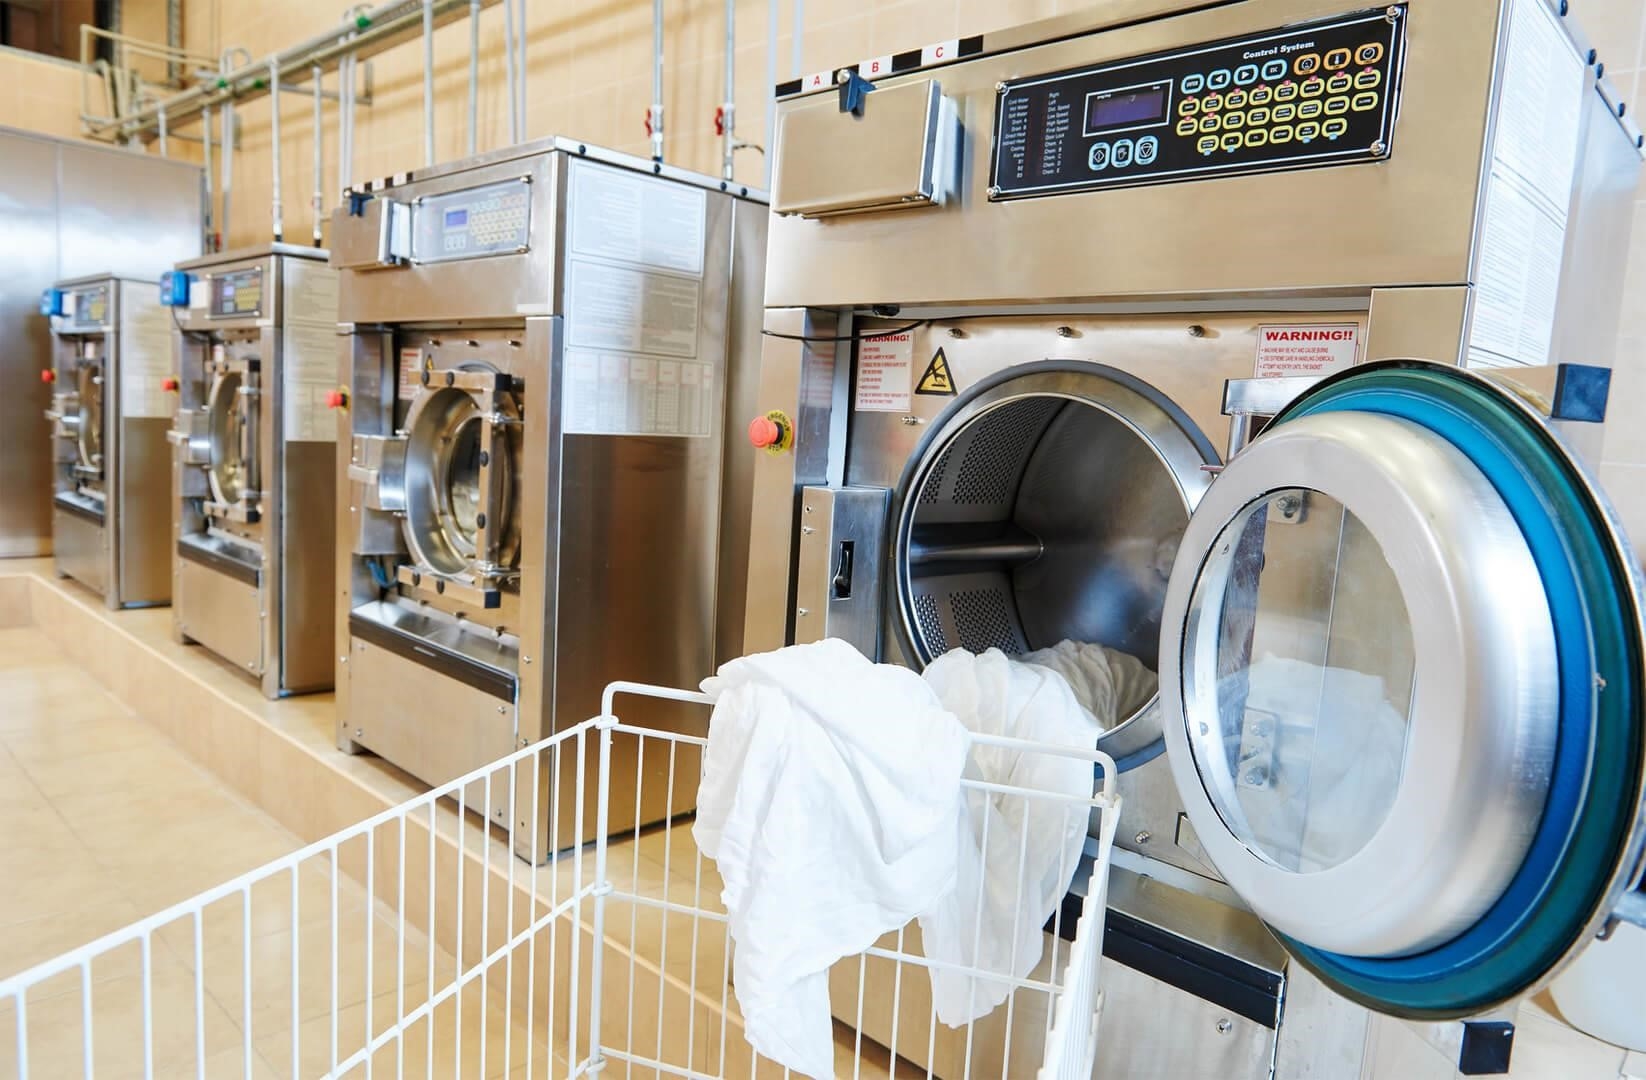 Dịch vụ giặt ủi quận 7 – Giao nhận 2 chiều tận nơi